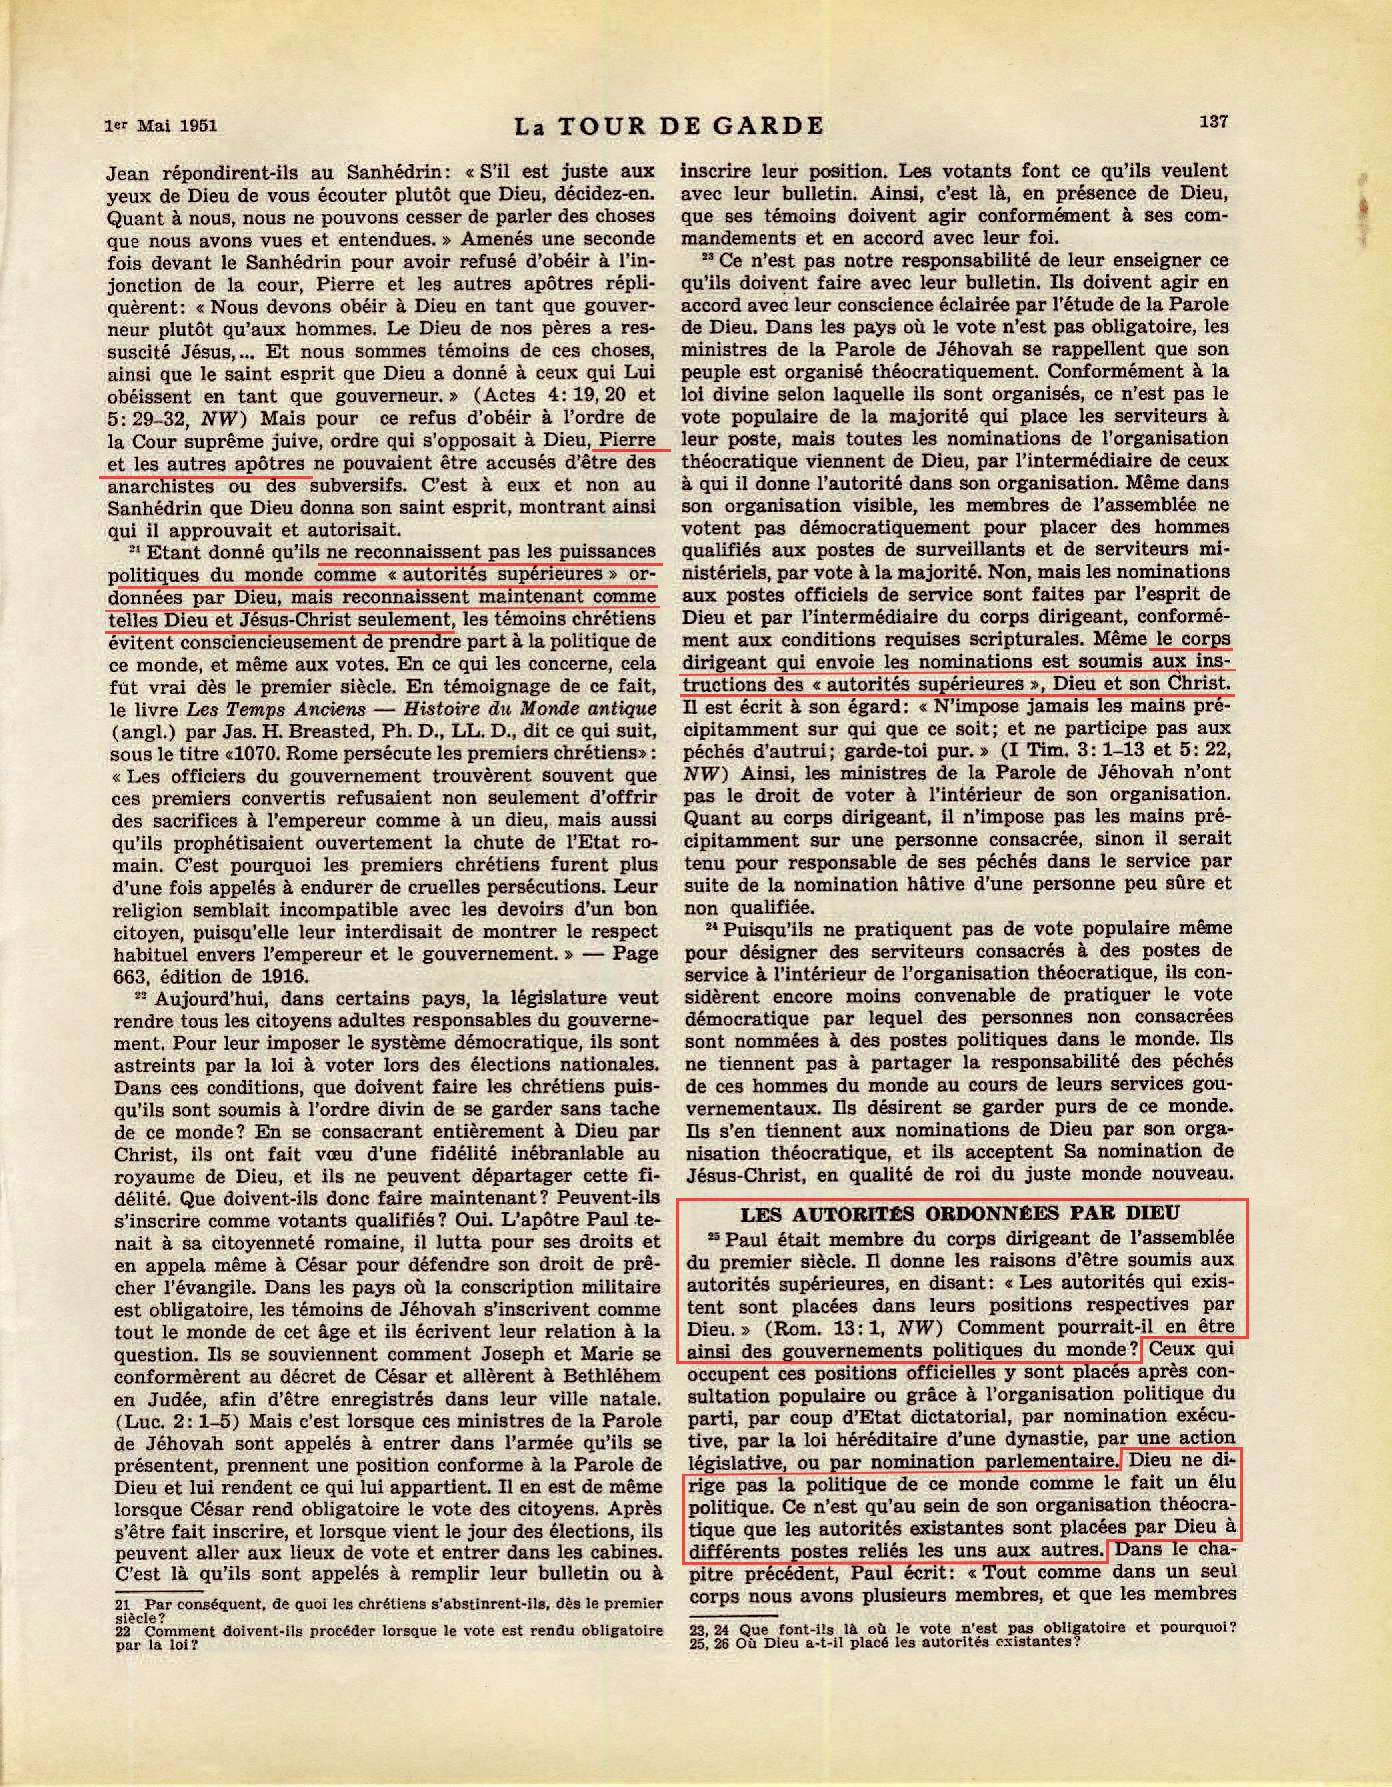 iLes autorités supérieures - Page 2 La-Tour-de-Garde-1-mai-1951-p137